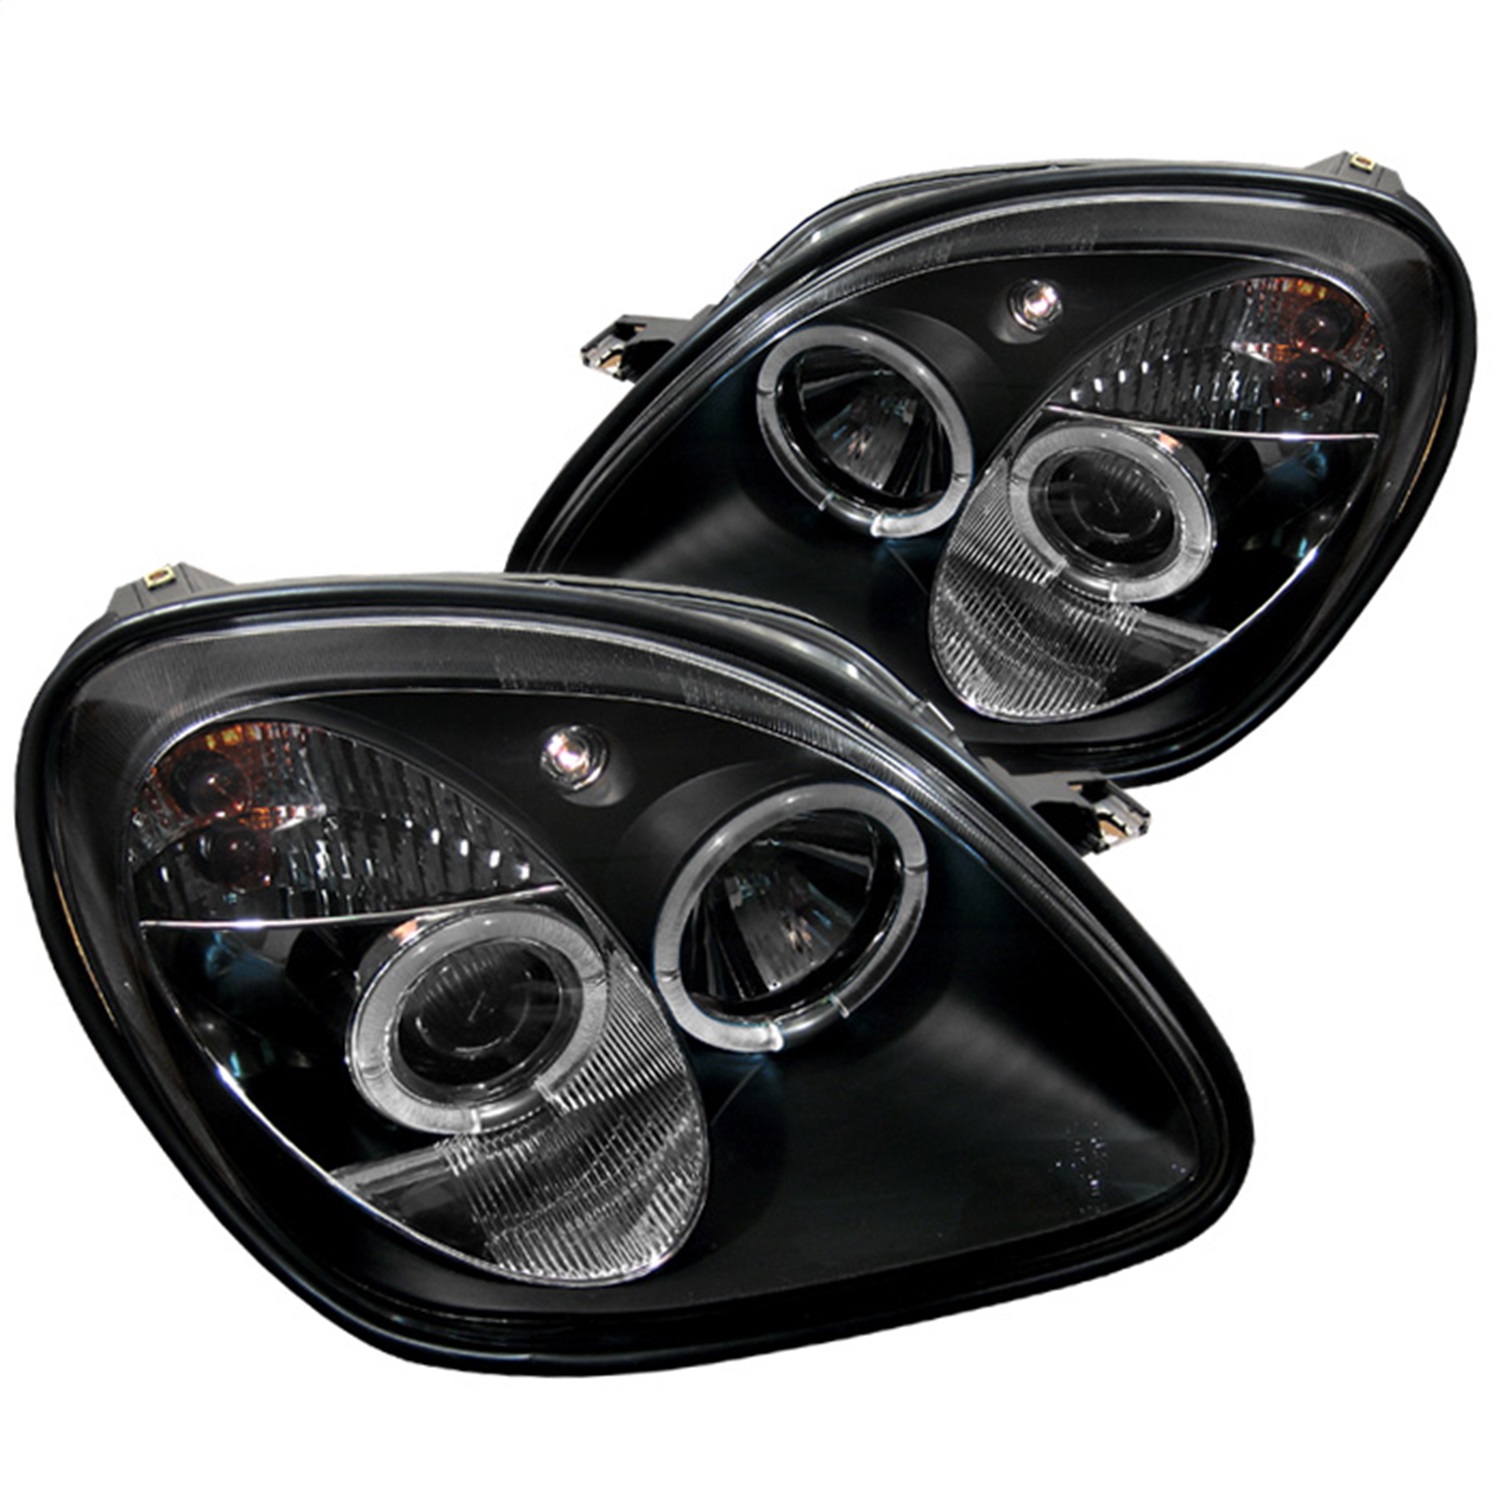 Spyder Auto 5011190 Halo Projector Headlights Fits 98-04 SLK230 SLK32 AMG SLK320